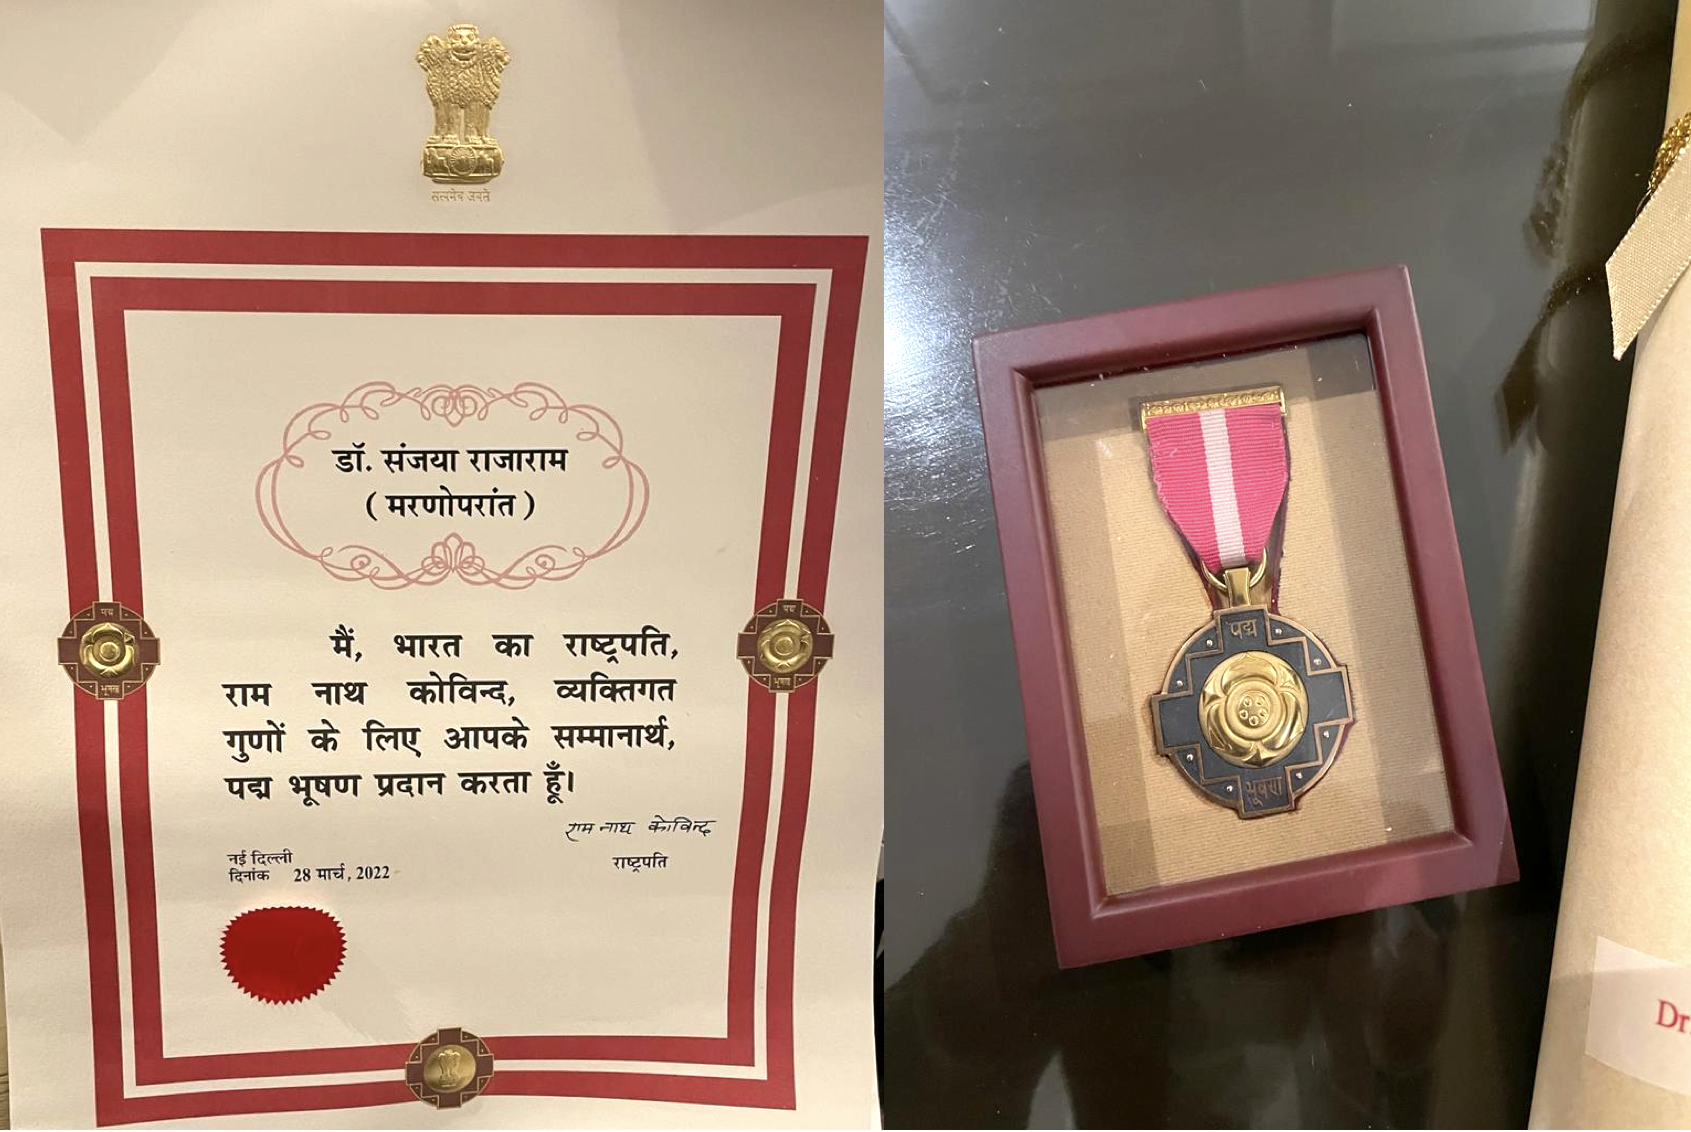 Padma Bhushan Award diploma and medal. (Photo: Courtesy of Jai Prakash Rajaram)